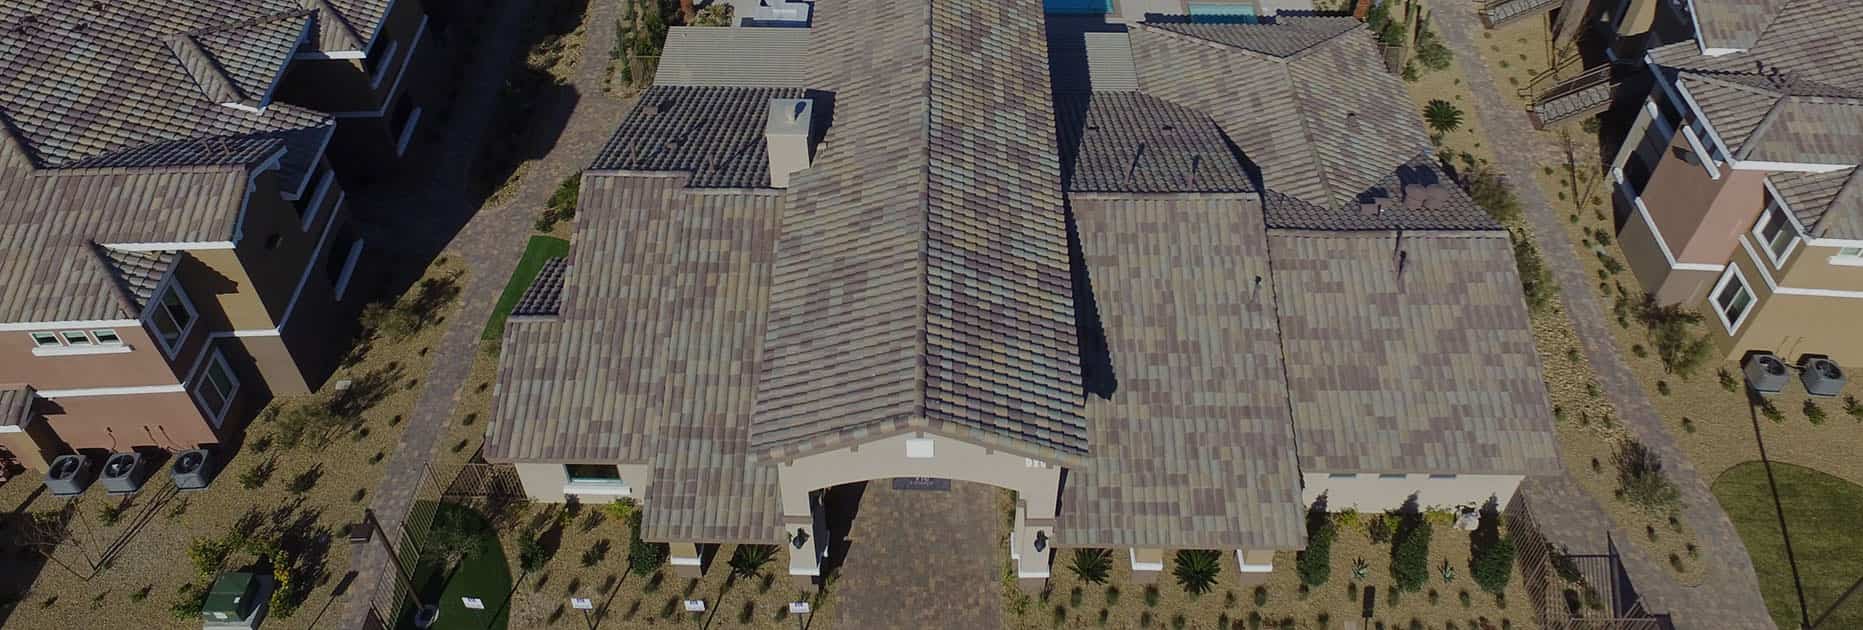 las vegas multi-family residential roofing